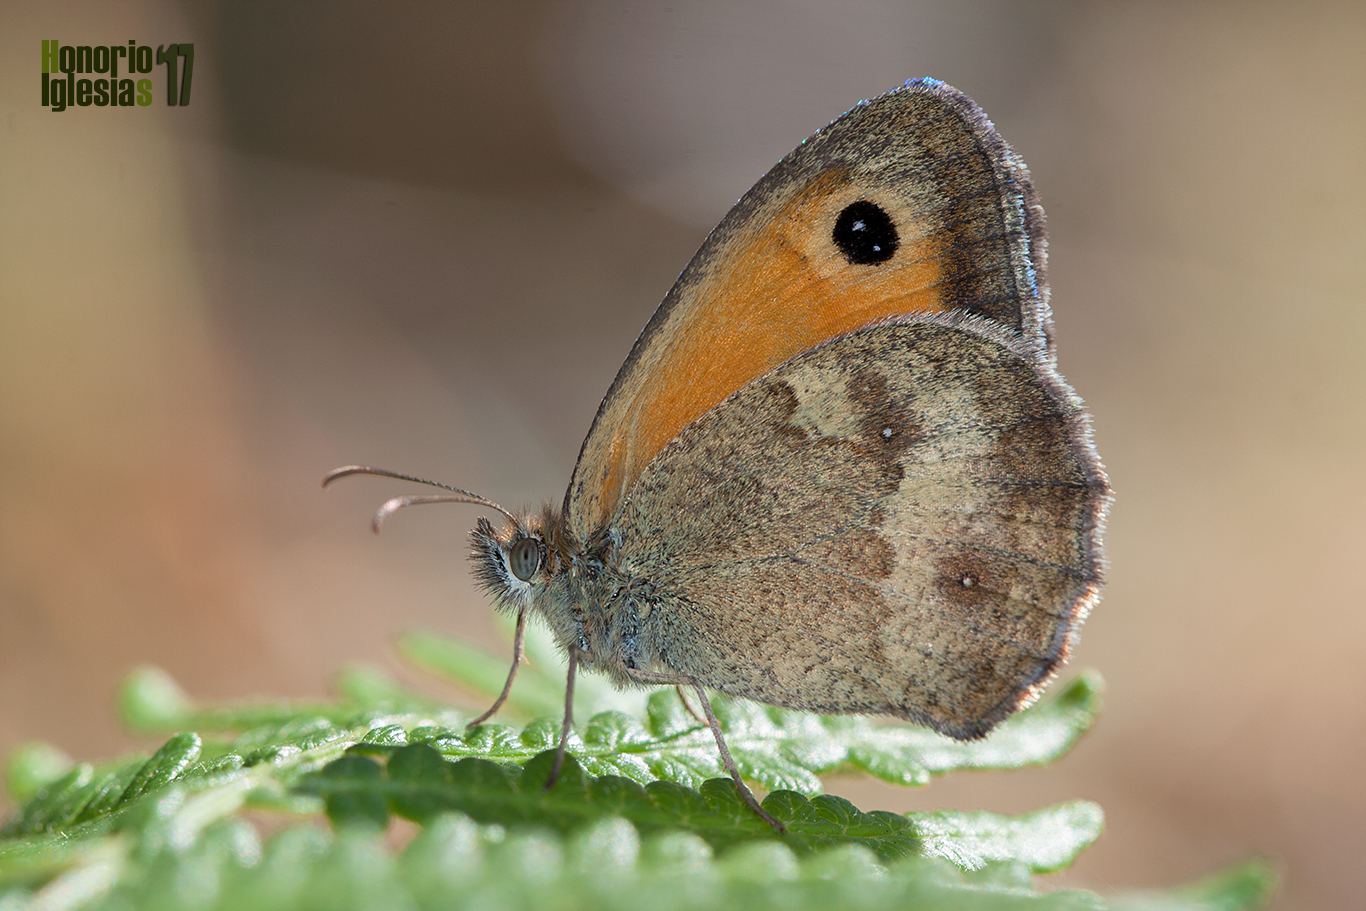 Ejemplar de mariposa lobito jaspeado o lobito agreste (Pyronia tithonus), mostrando el ocelo doblemente pupilado de blanco, característica propia de este género de mariposas.